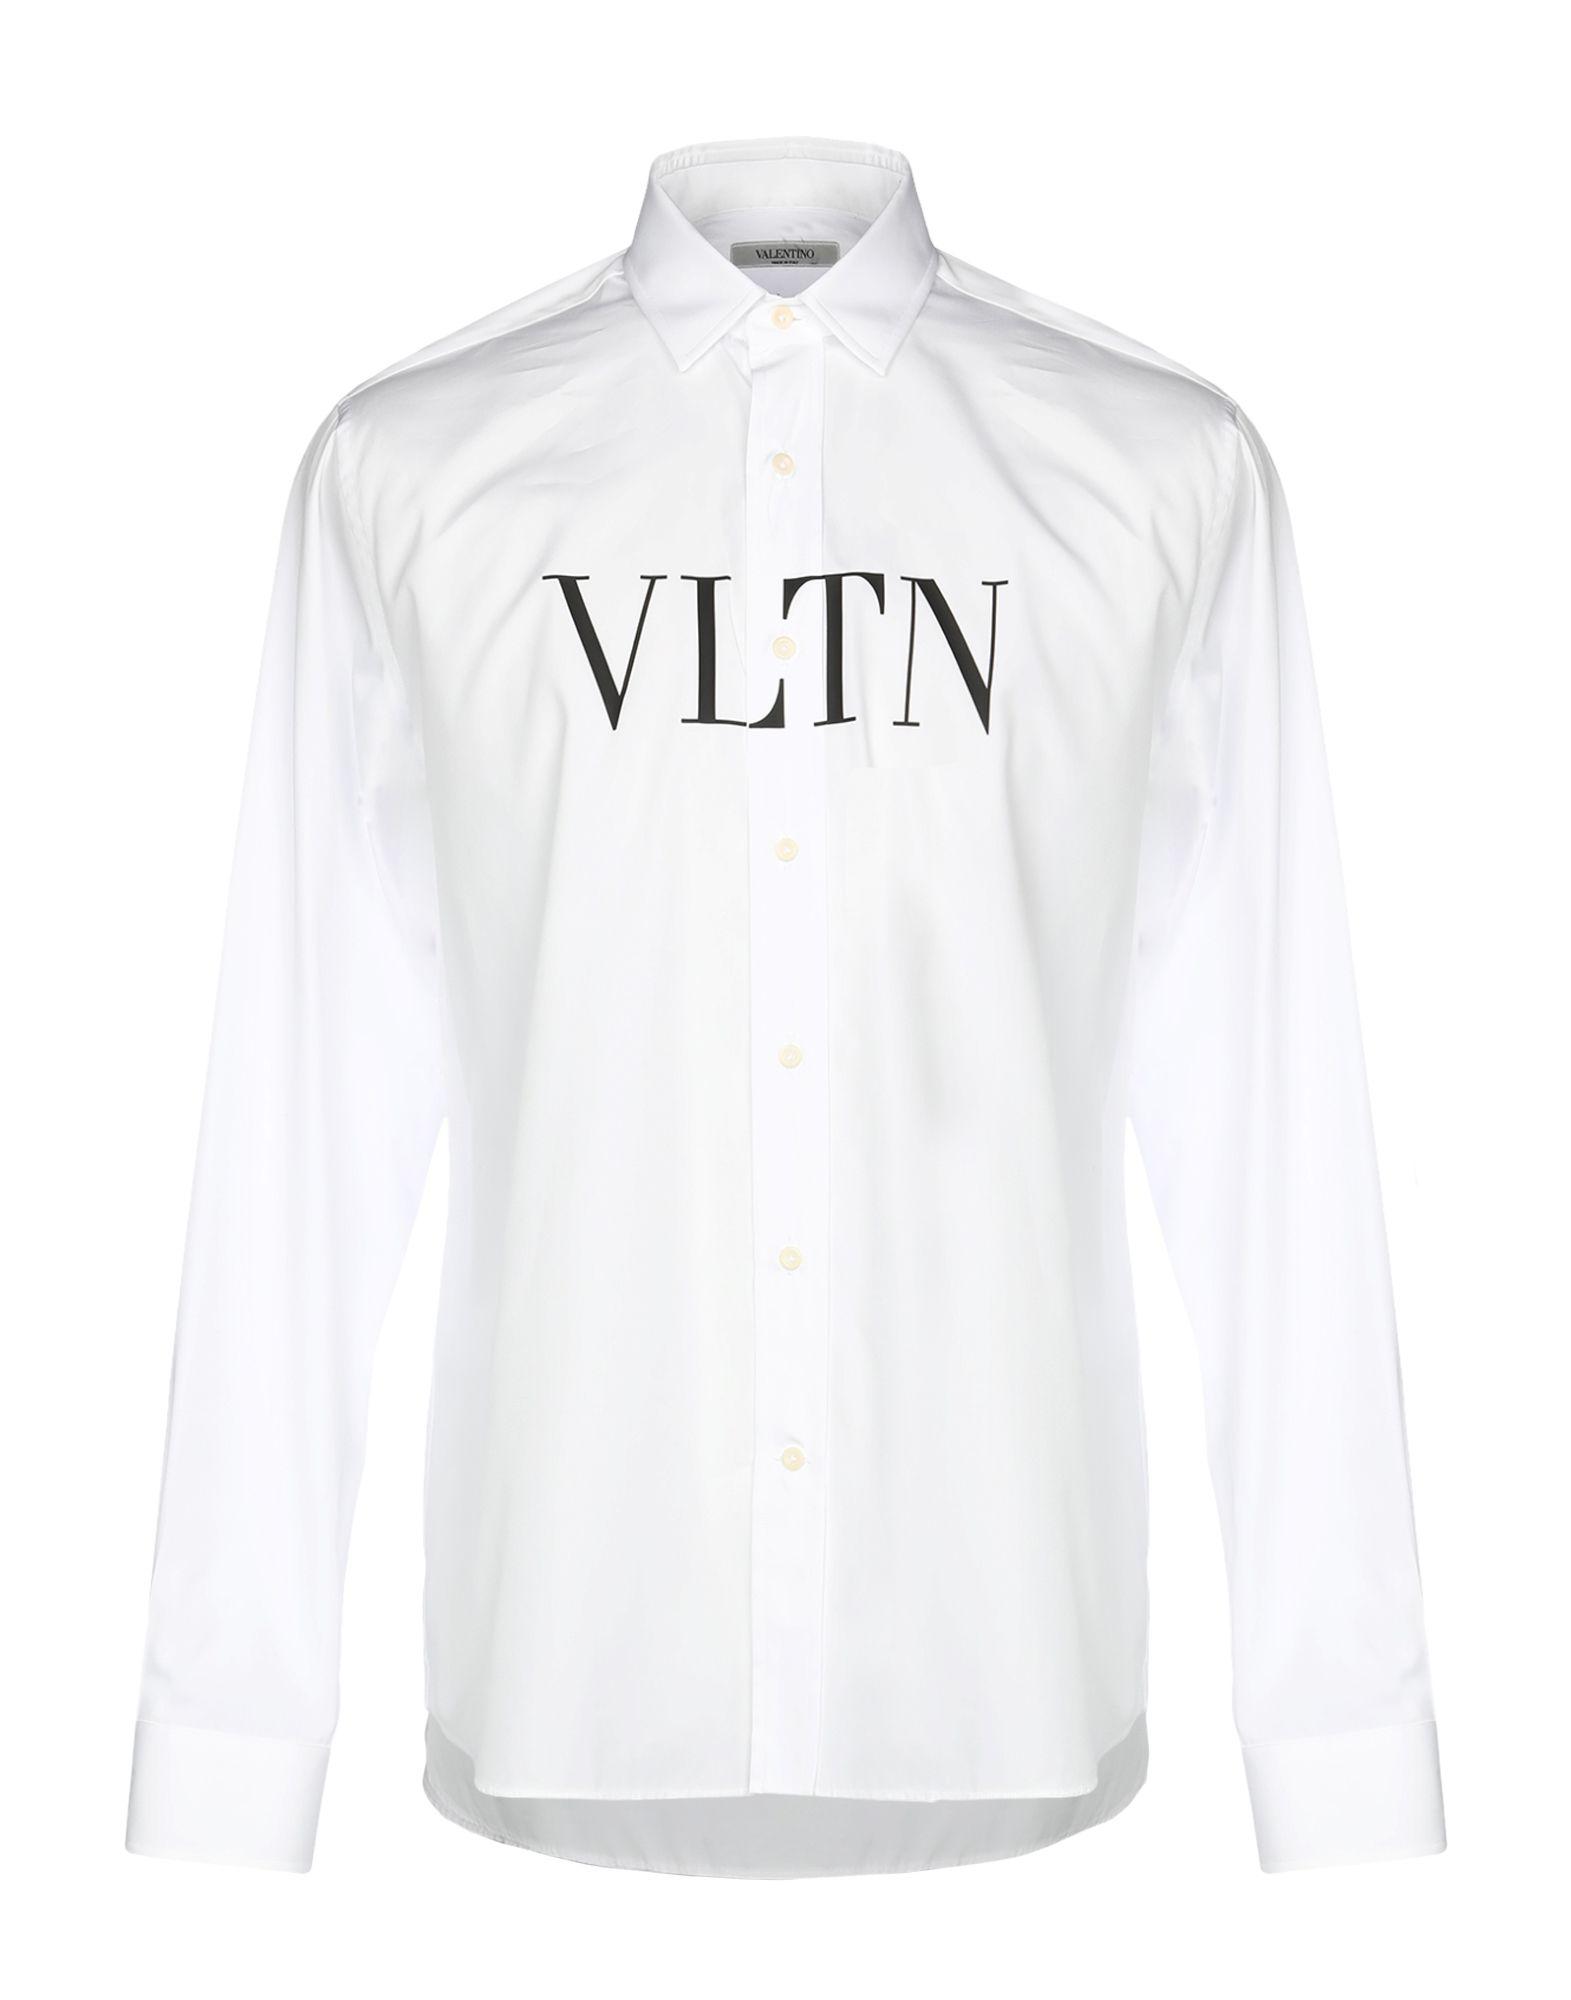 Valentino Cotton Vltn Shirt in White for Men - Lyst